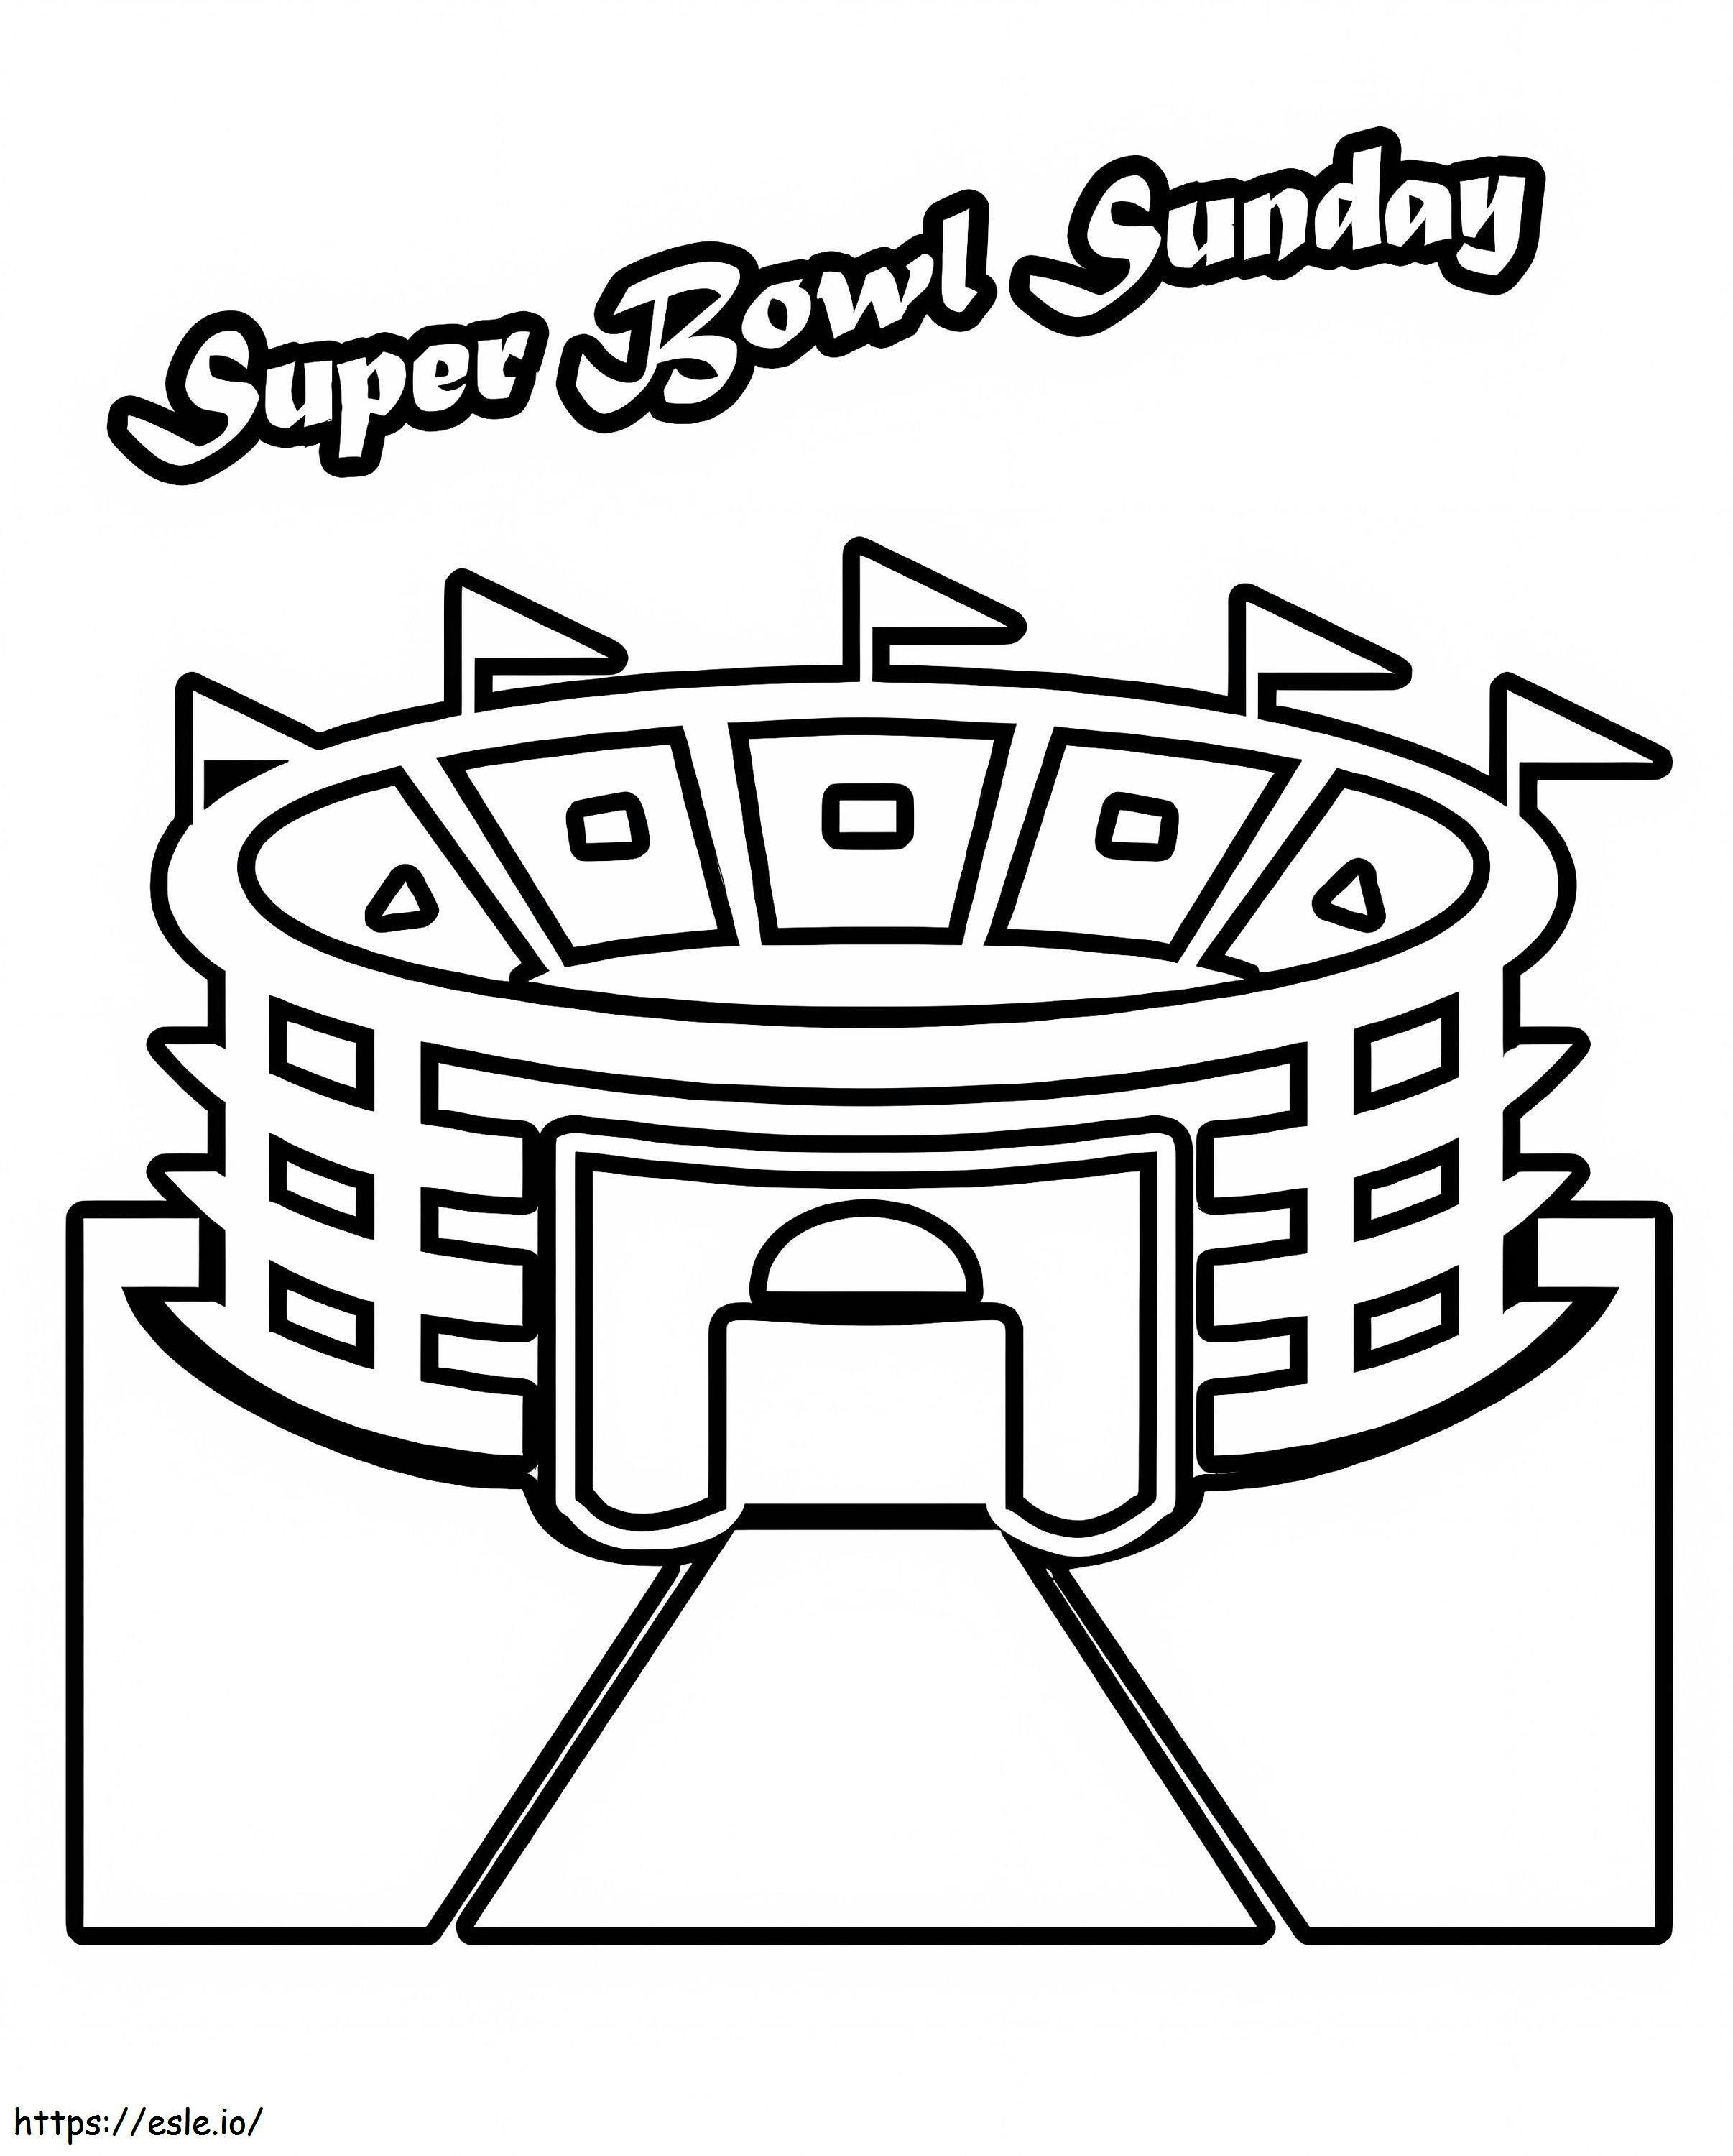 Página para colorear del Super Bowl del domingo para colorear